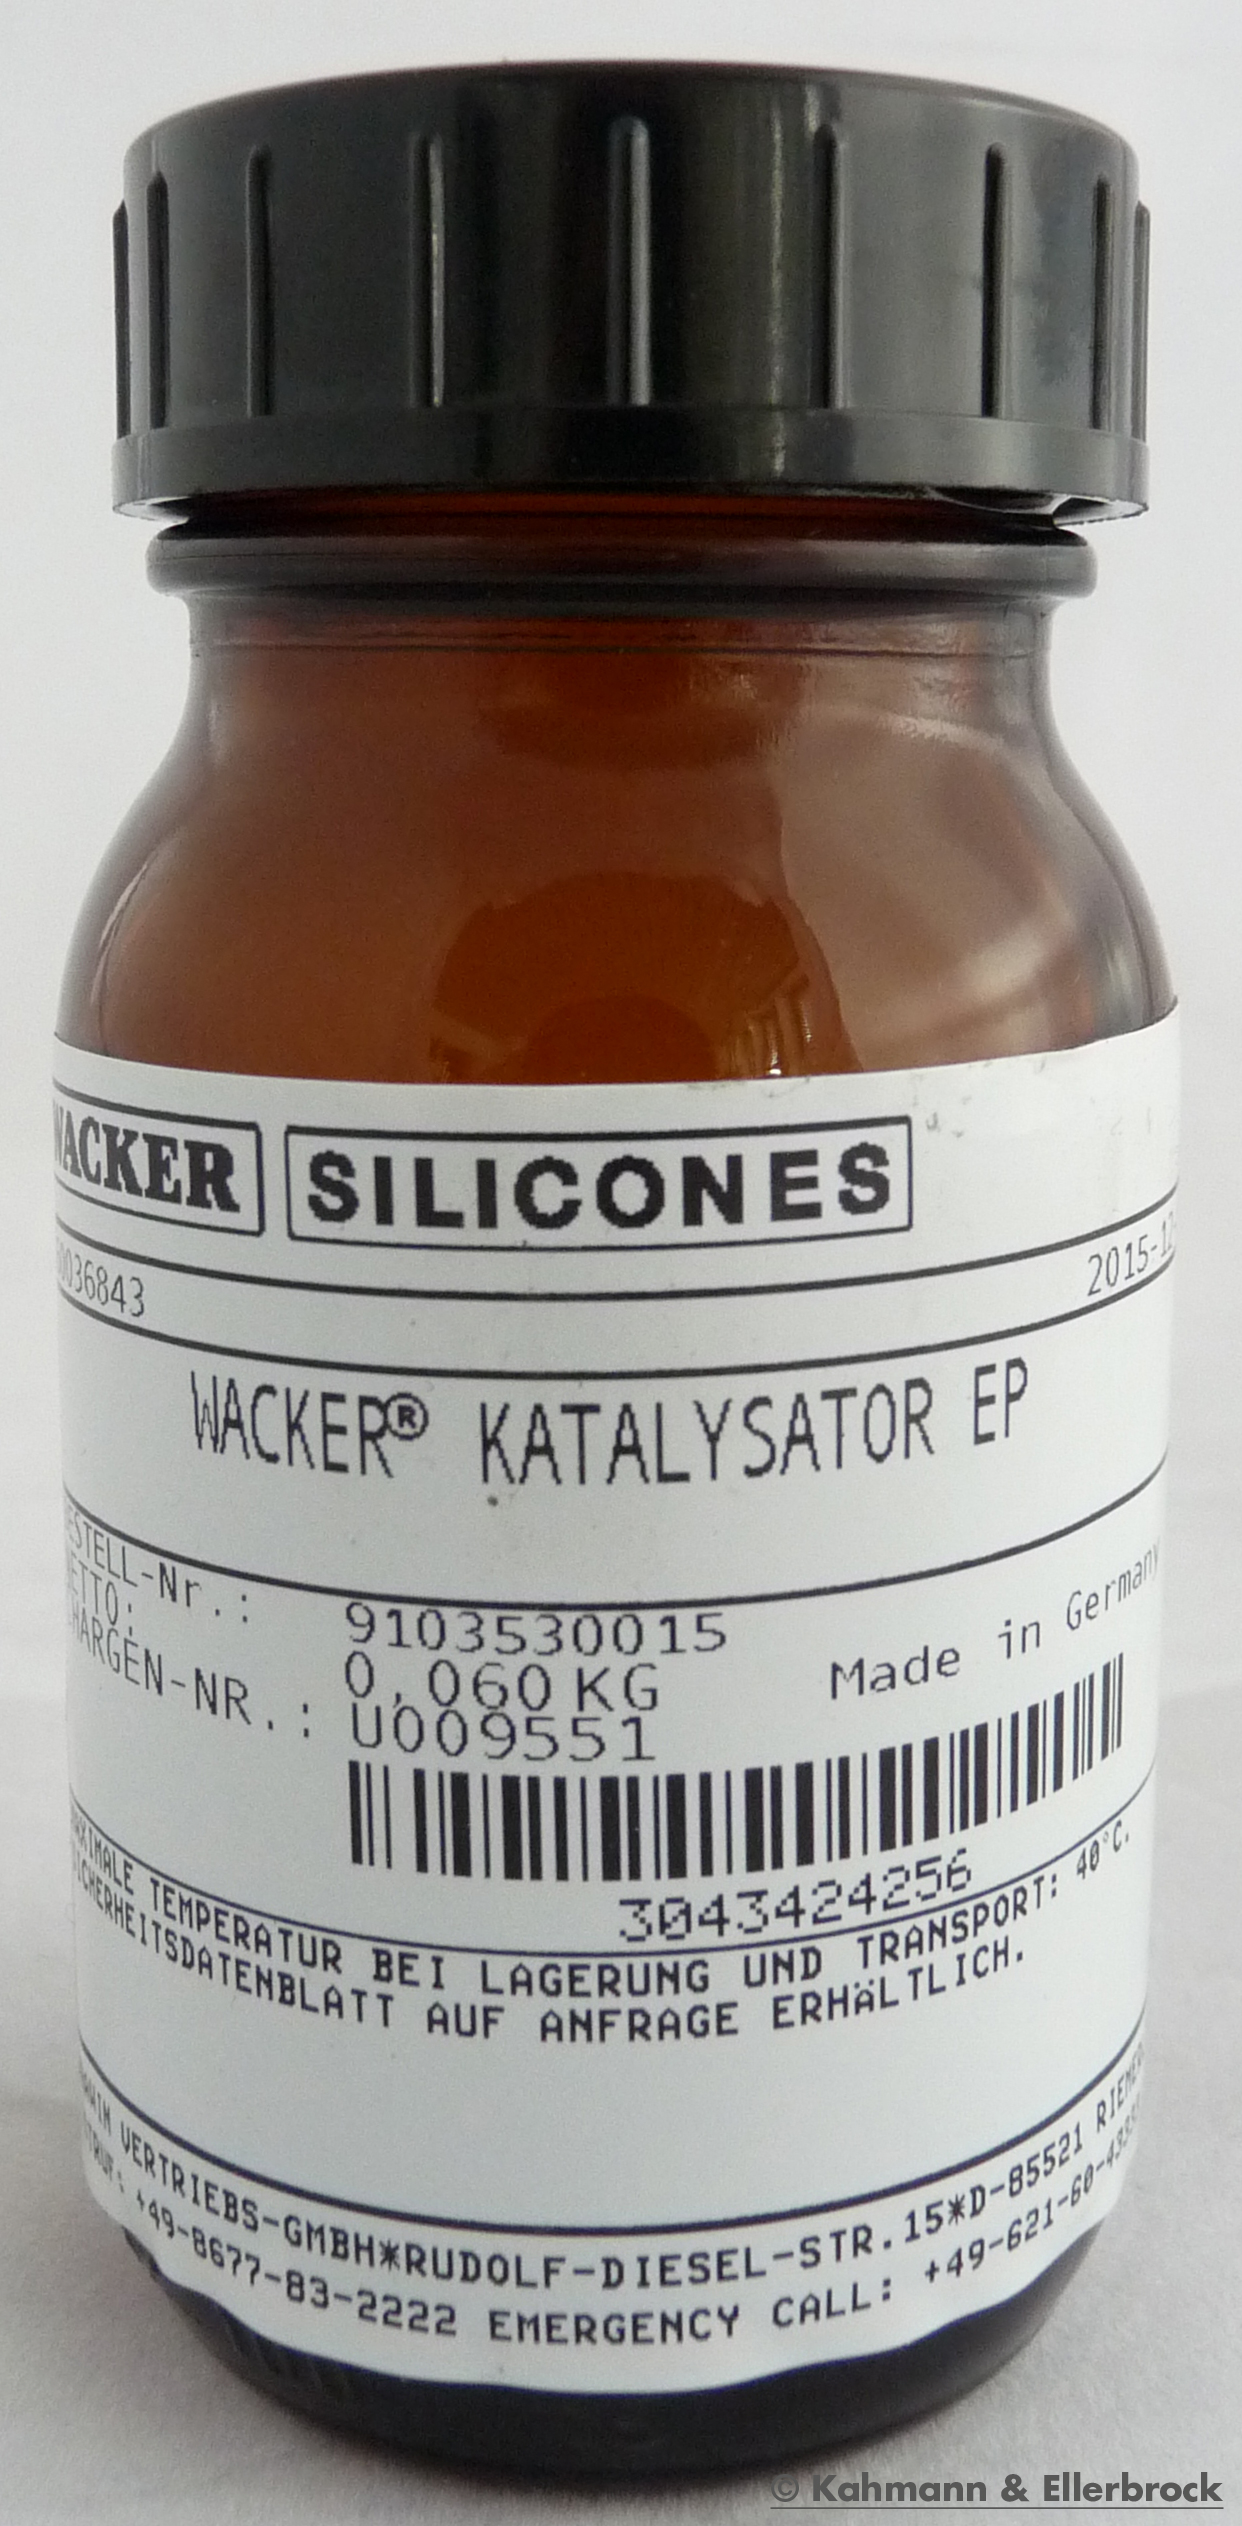 Wacker Katalysator EP